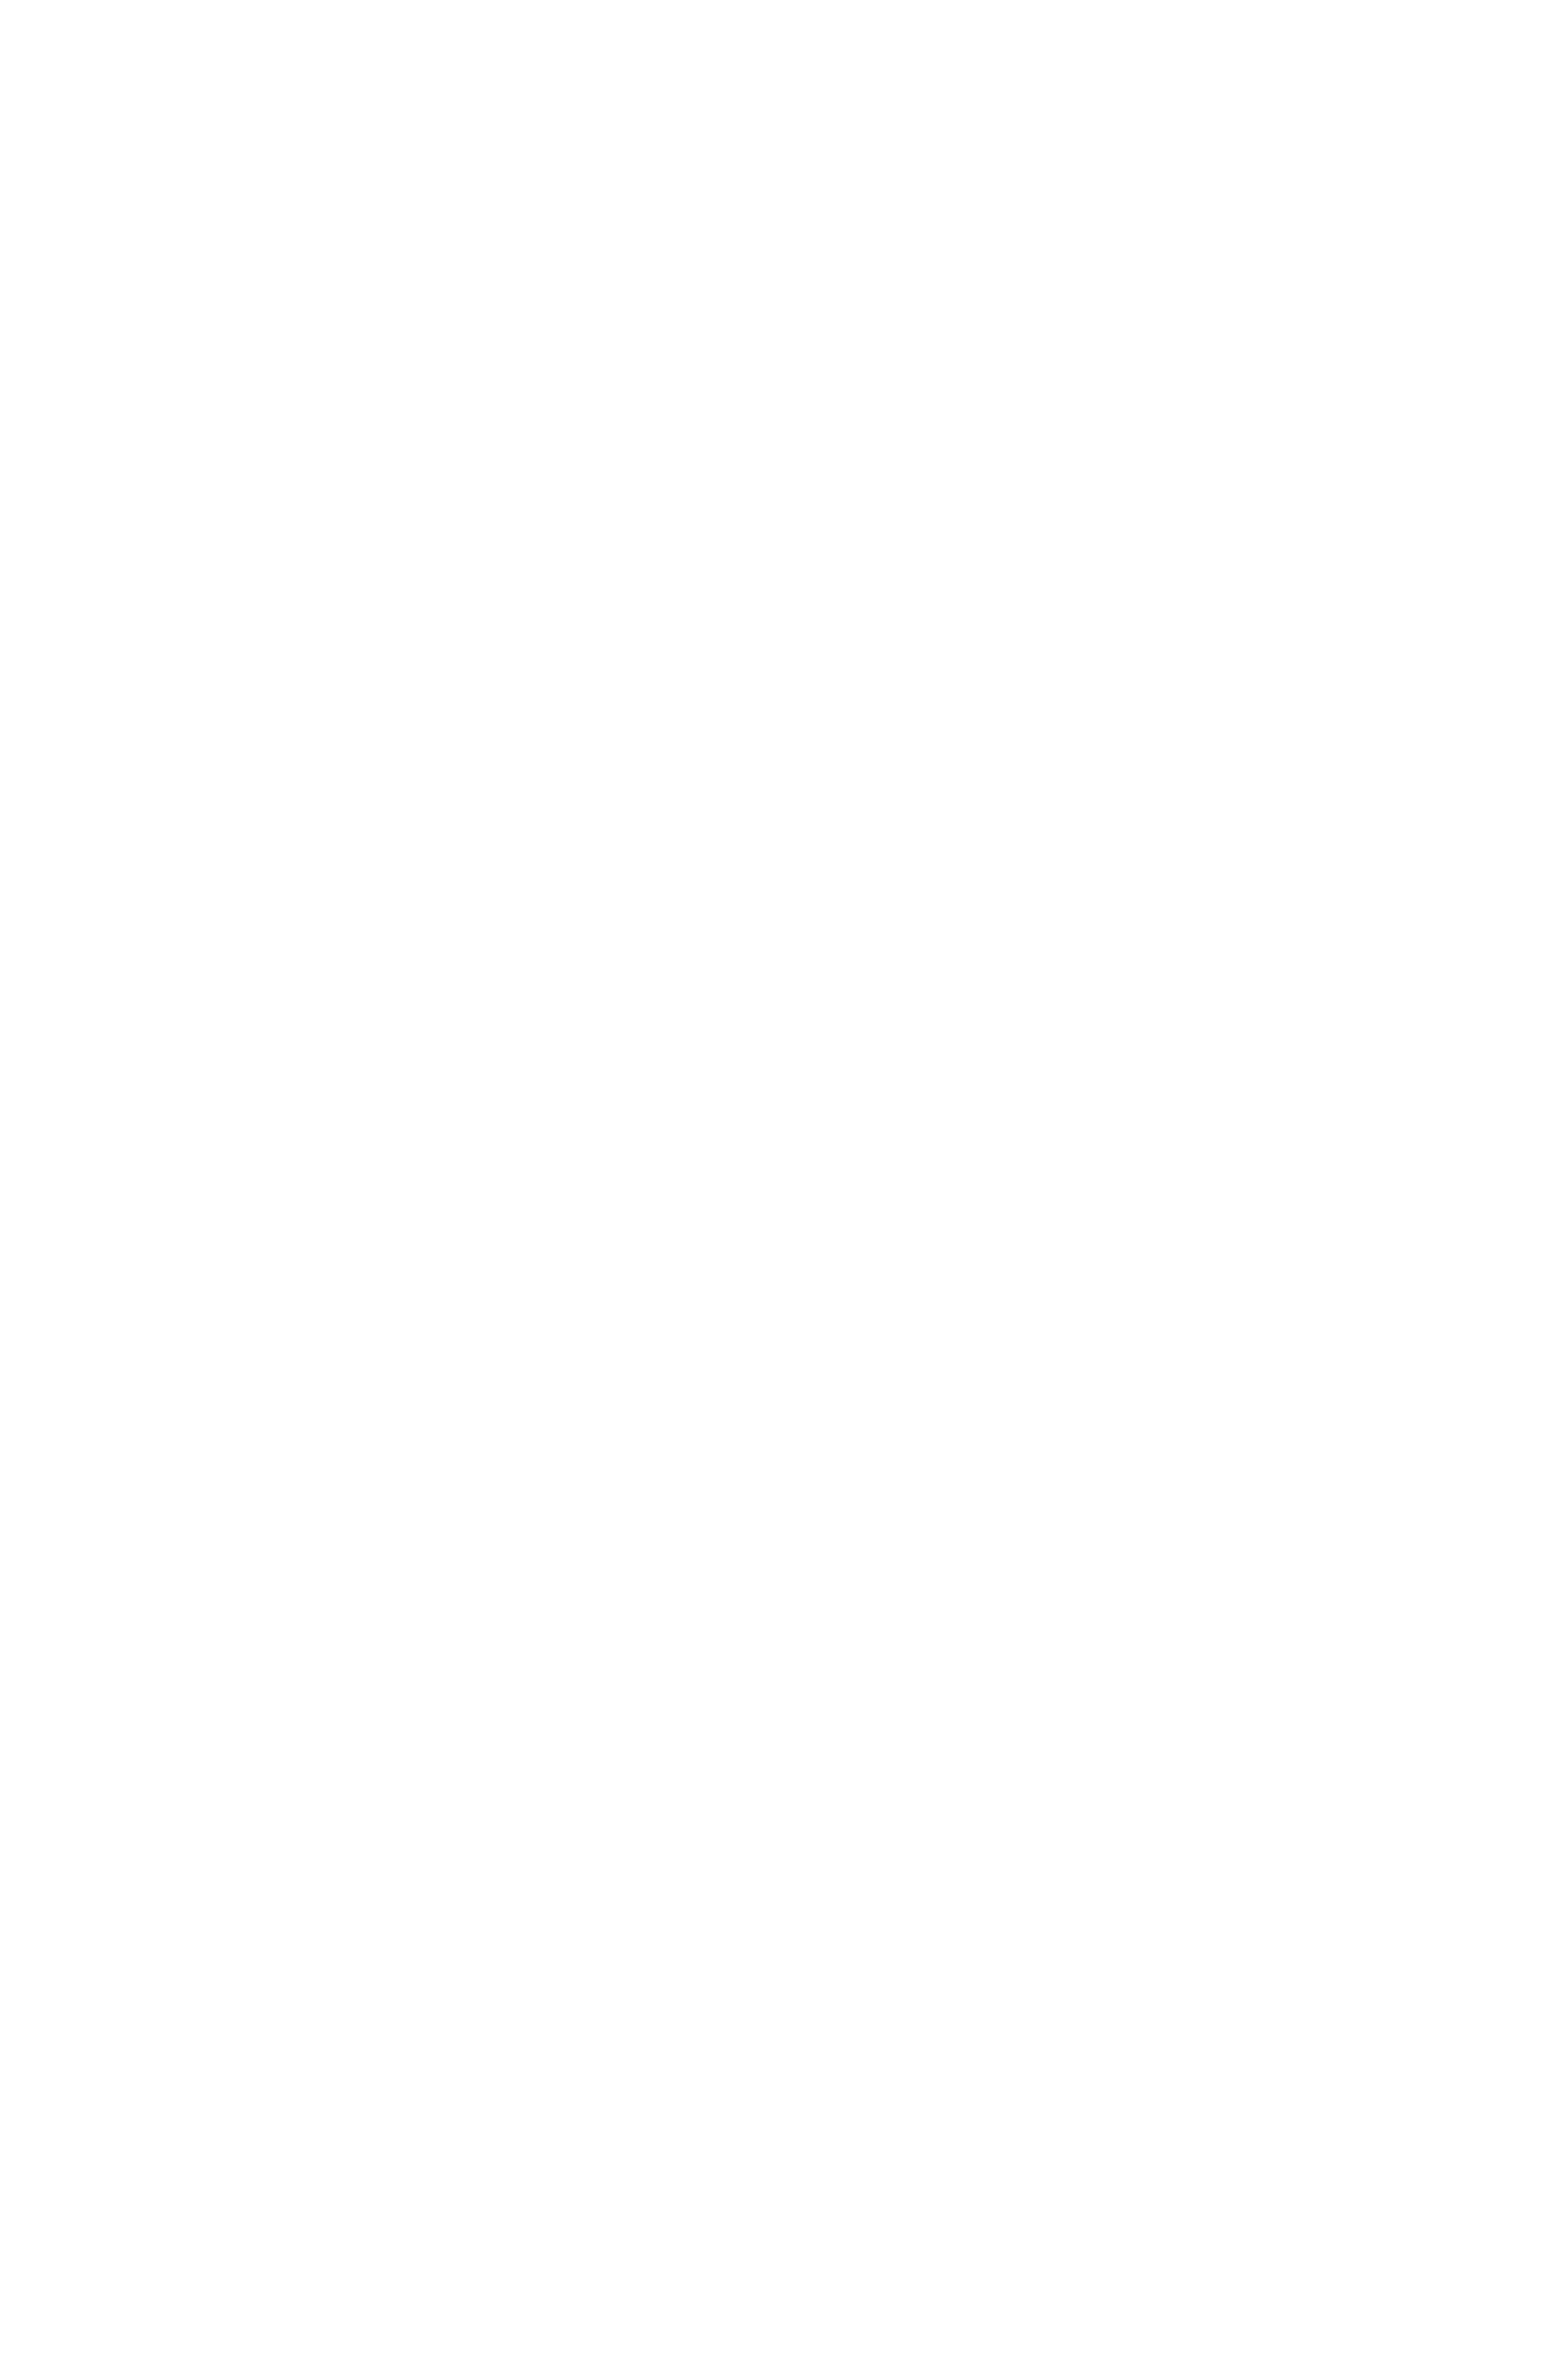 CANSADO skummadrass medium 180x200 cm